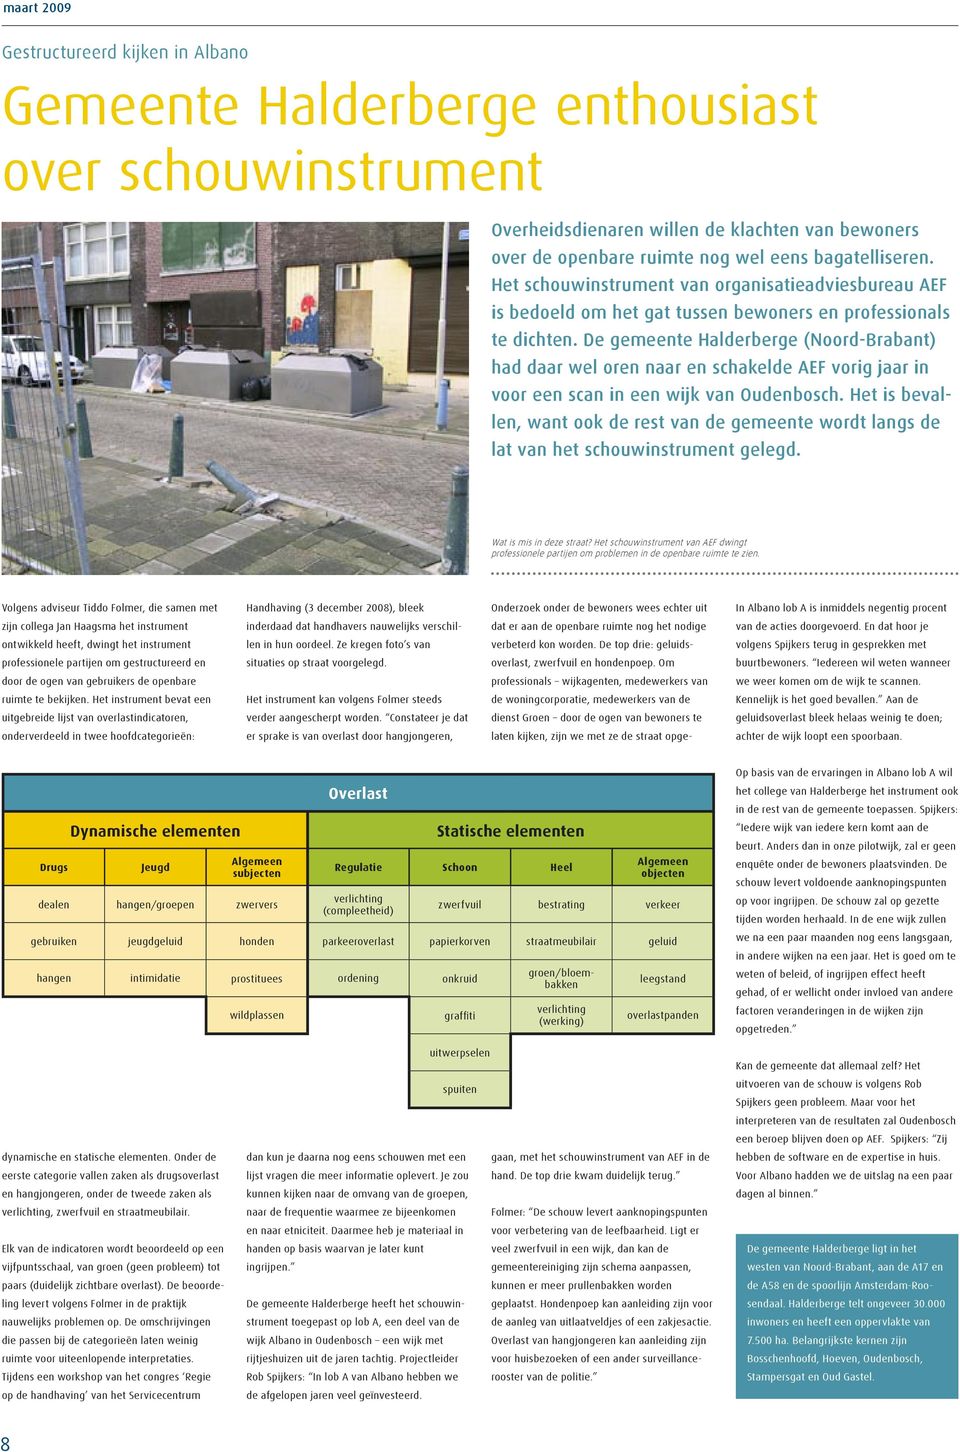 De gemeente Halderberge (Noord-Brabant) had daar wel oren naar en schakelde AEF vorig jaar in voor een scan in een wijk van Oudenbosch.